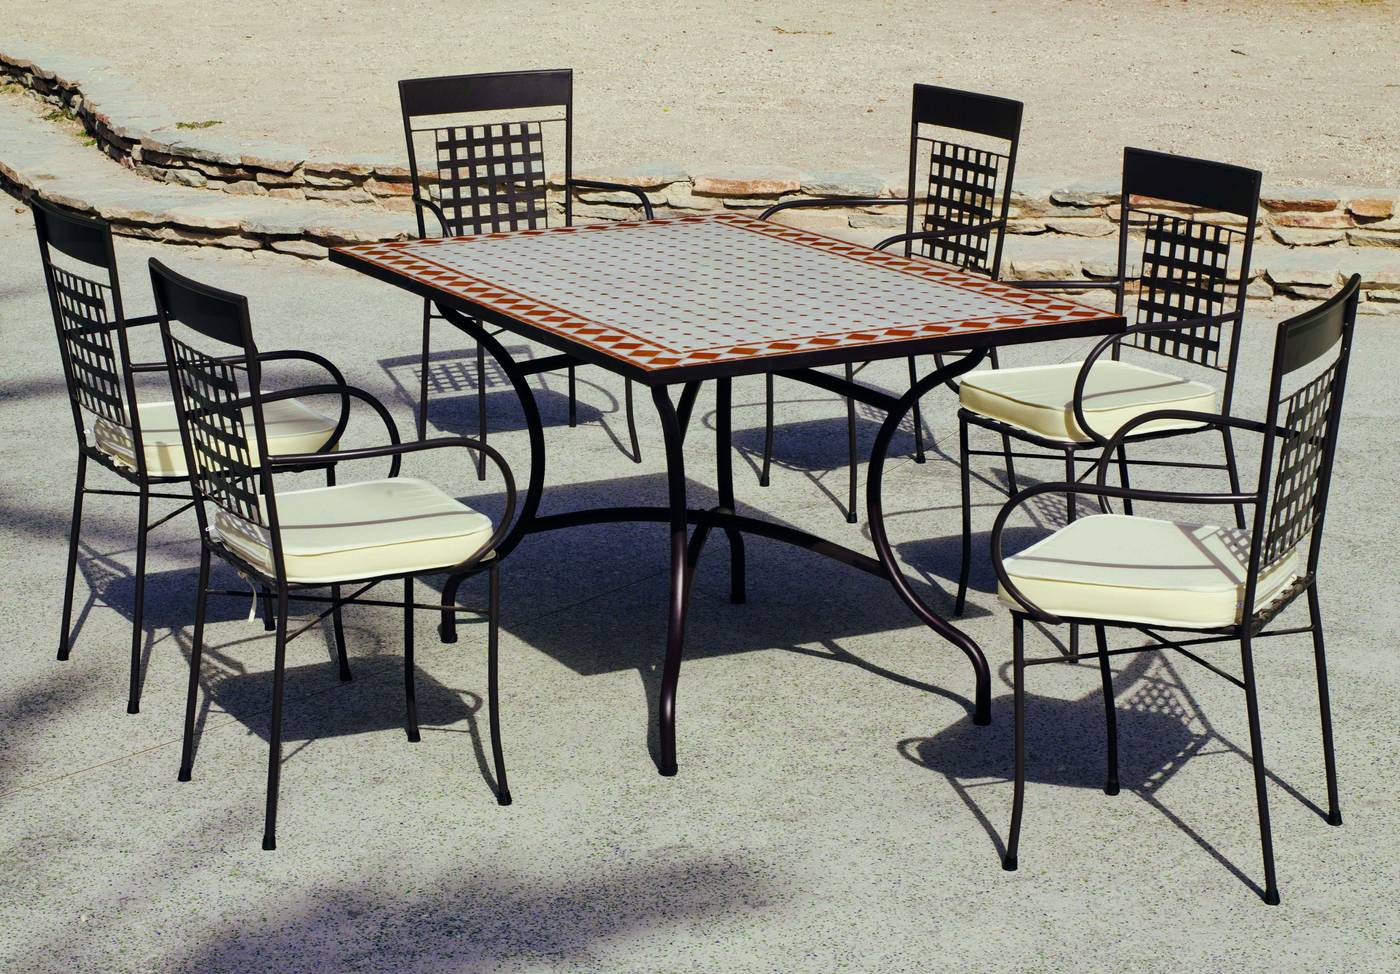 Conjunto de forja para jardín o terraza: 1 mesa de forja con panel mosaico + 4 sillones de forja + 4 cojines. Mesa válida para 6 sillones.